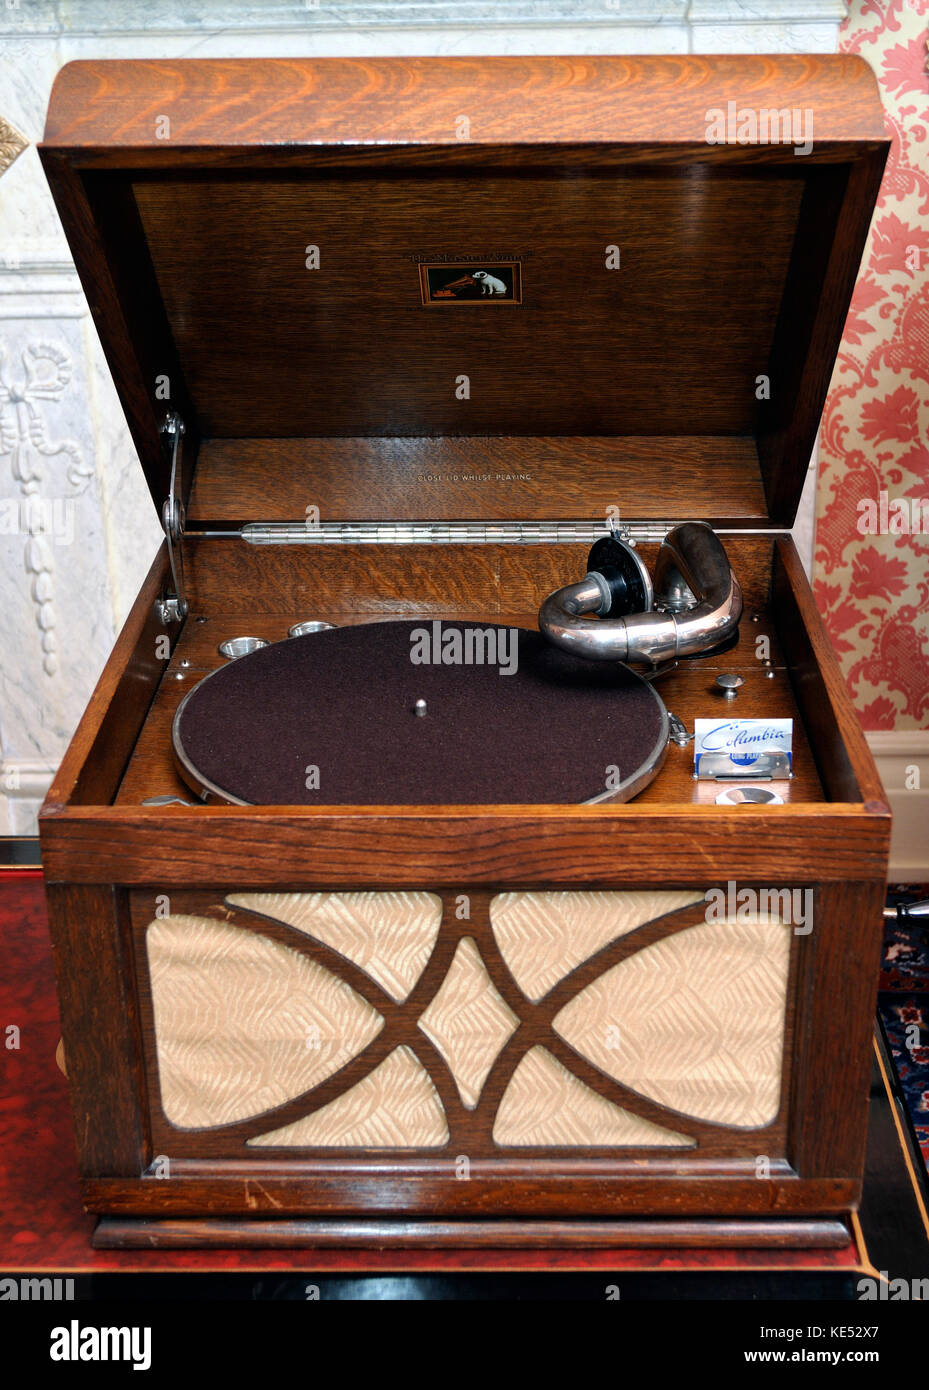 Grammofono portatile dal 1940s. HMV modello 102. Fabbricato 1931 - 1958.  Sound box sulla parte anteriore del grammofono. Giradischi con Parlophone  record. Ha suonato con il coperchio aperto Foto stock - Alamy